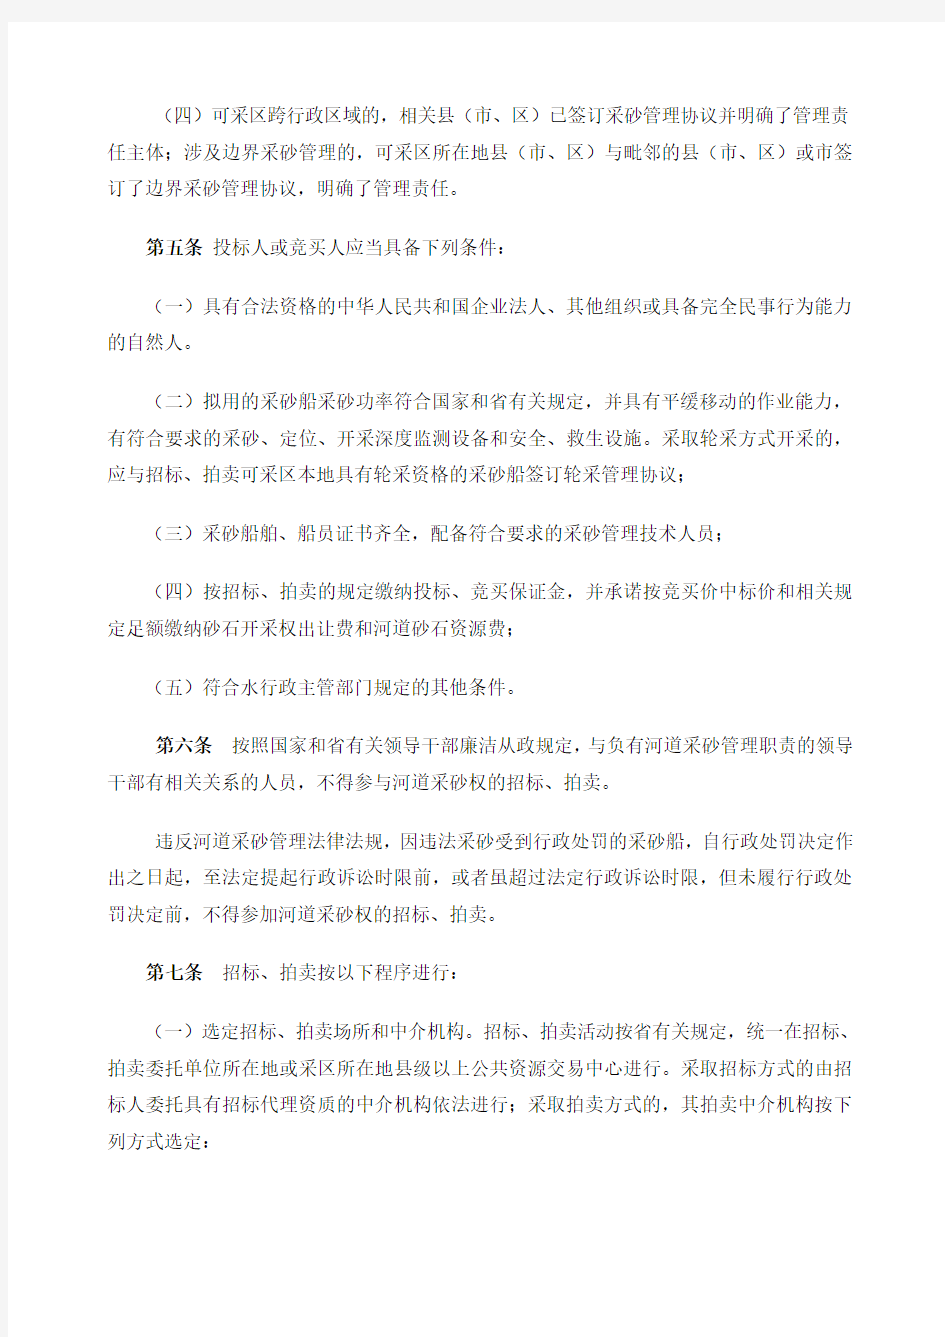 江西省河道砂石开采权招标拍卖管理办法